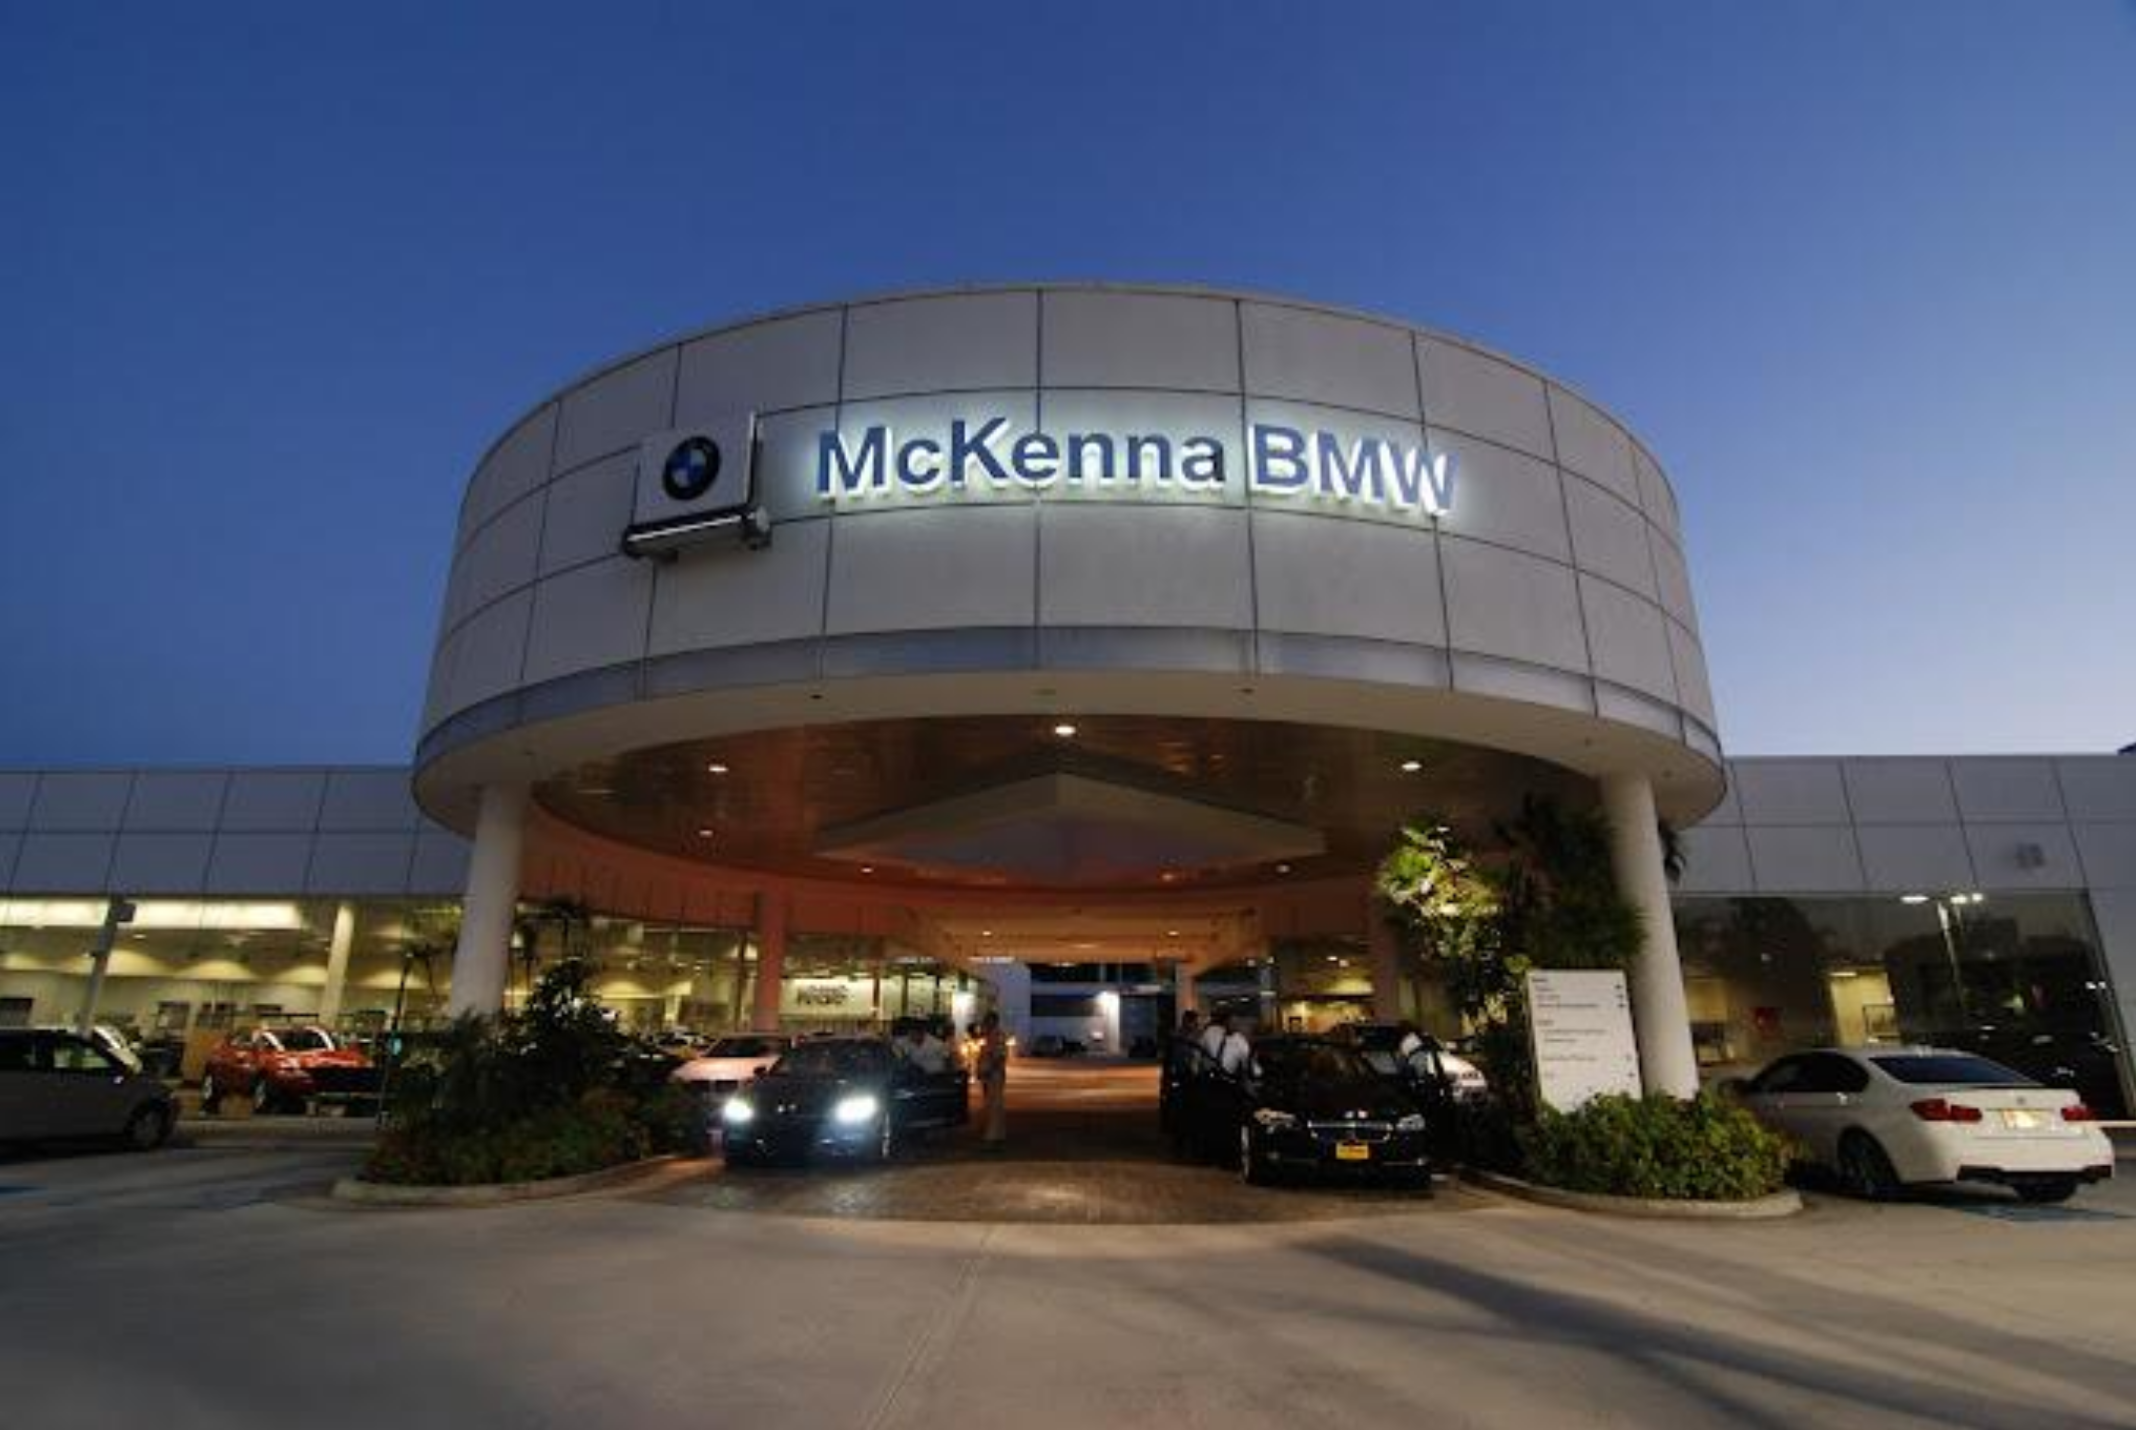 Featured image for “McKenna BMW Automotive Dealership”